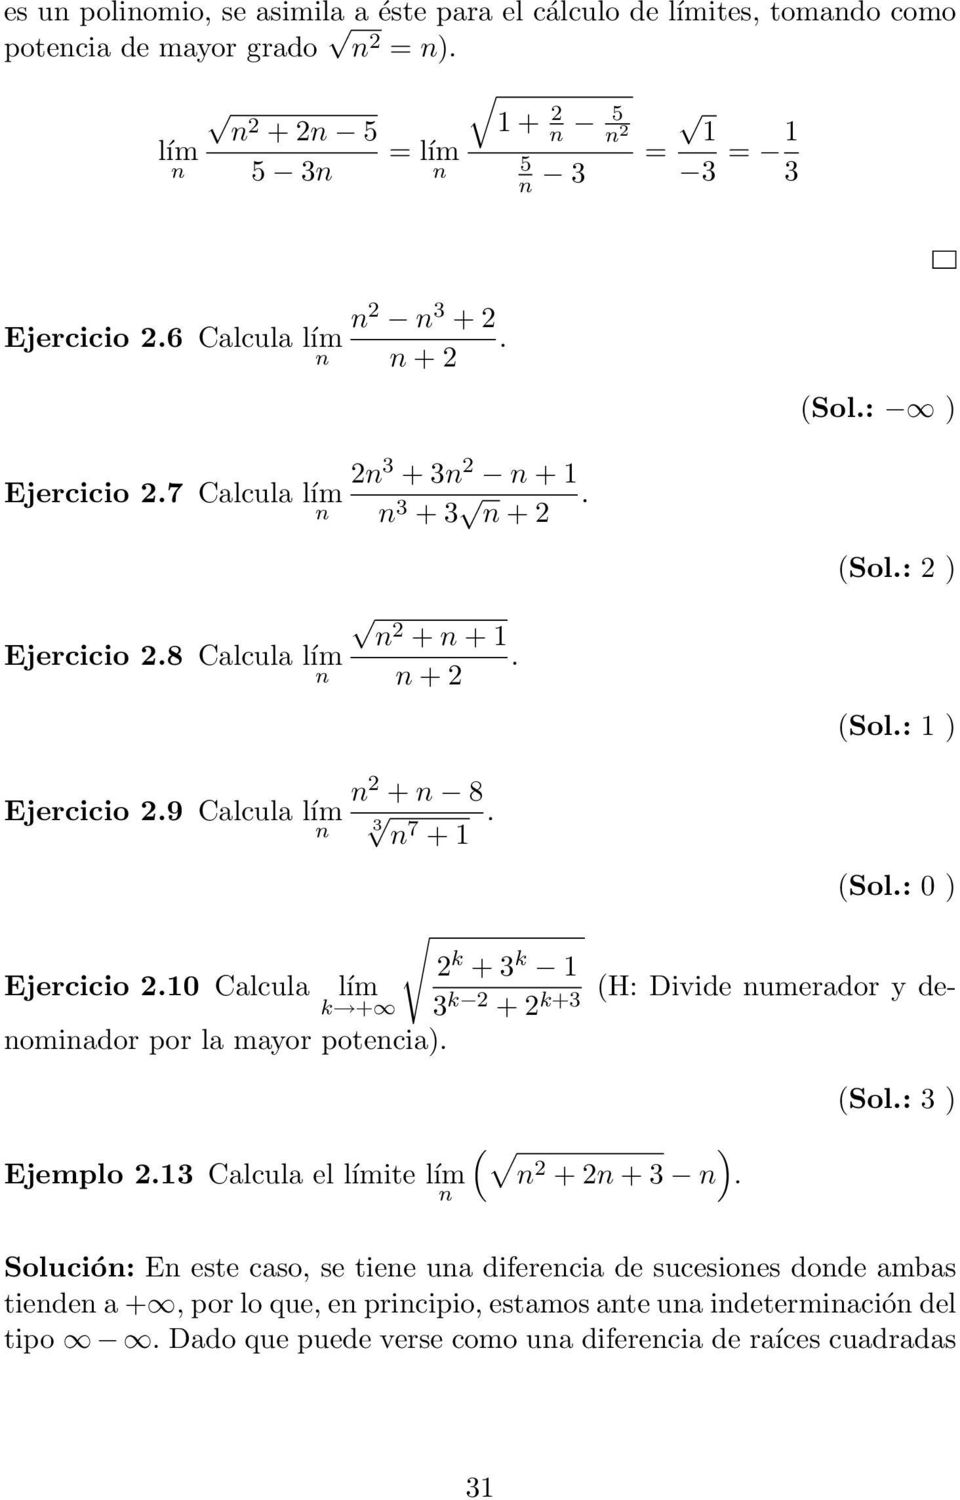 (Sol.: 0 ) 2 k + 3 k 1 Ejercicio 2.10 Calcula lím k + 3 k 2 (H: Divide umerador y deomiador por la mayor + 2k+3 potecia). ( ) Ejemplo 2.13 Calcula el límite lím 2 + 2 + 3. (Sol.